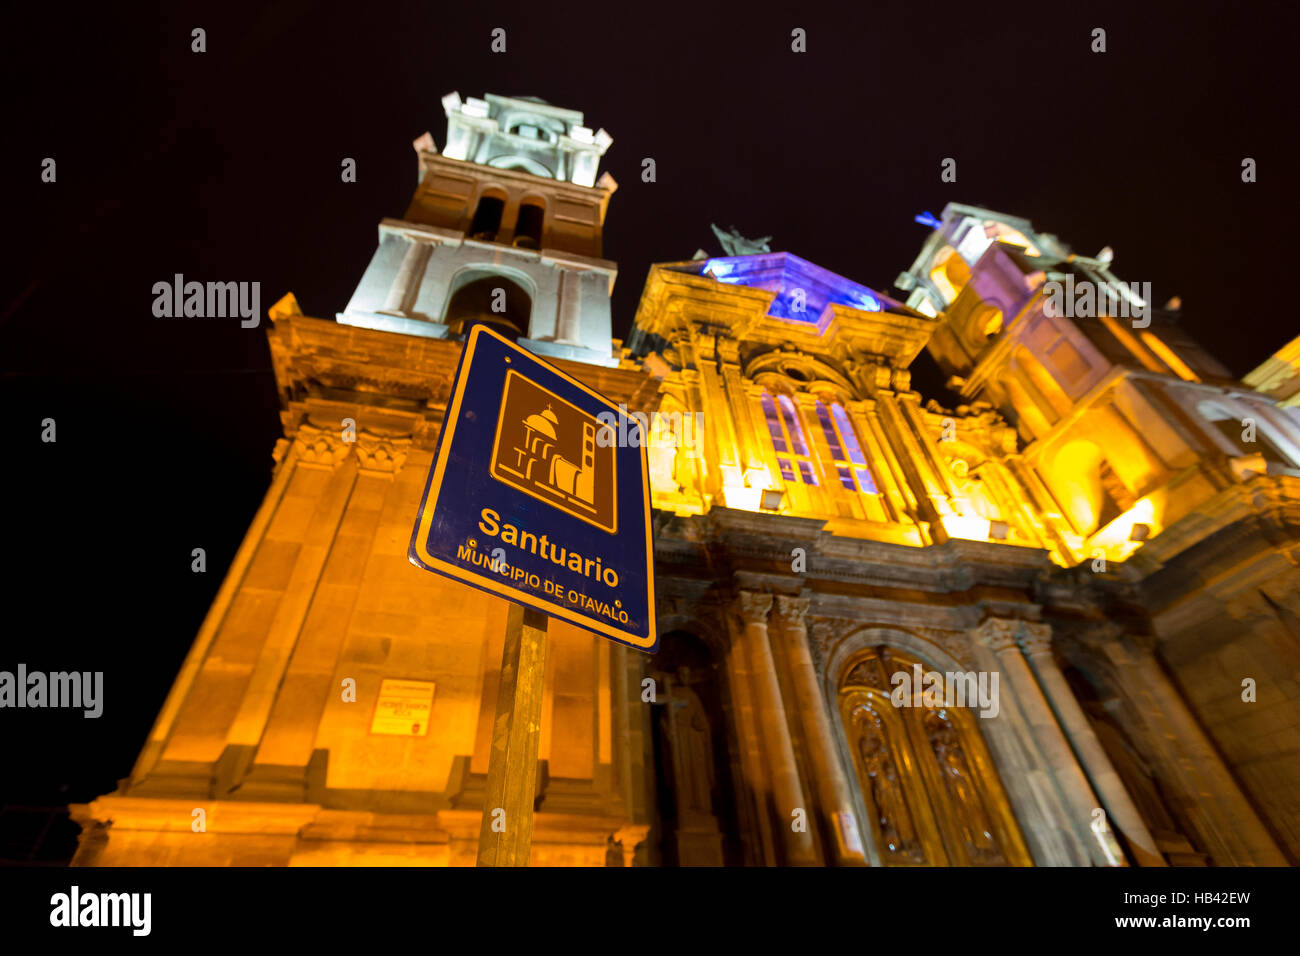 Señal de entrada a la Iglesia el Jordán en la noche de la ciudad de Otavalo, Ecuador Foto de stock